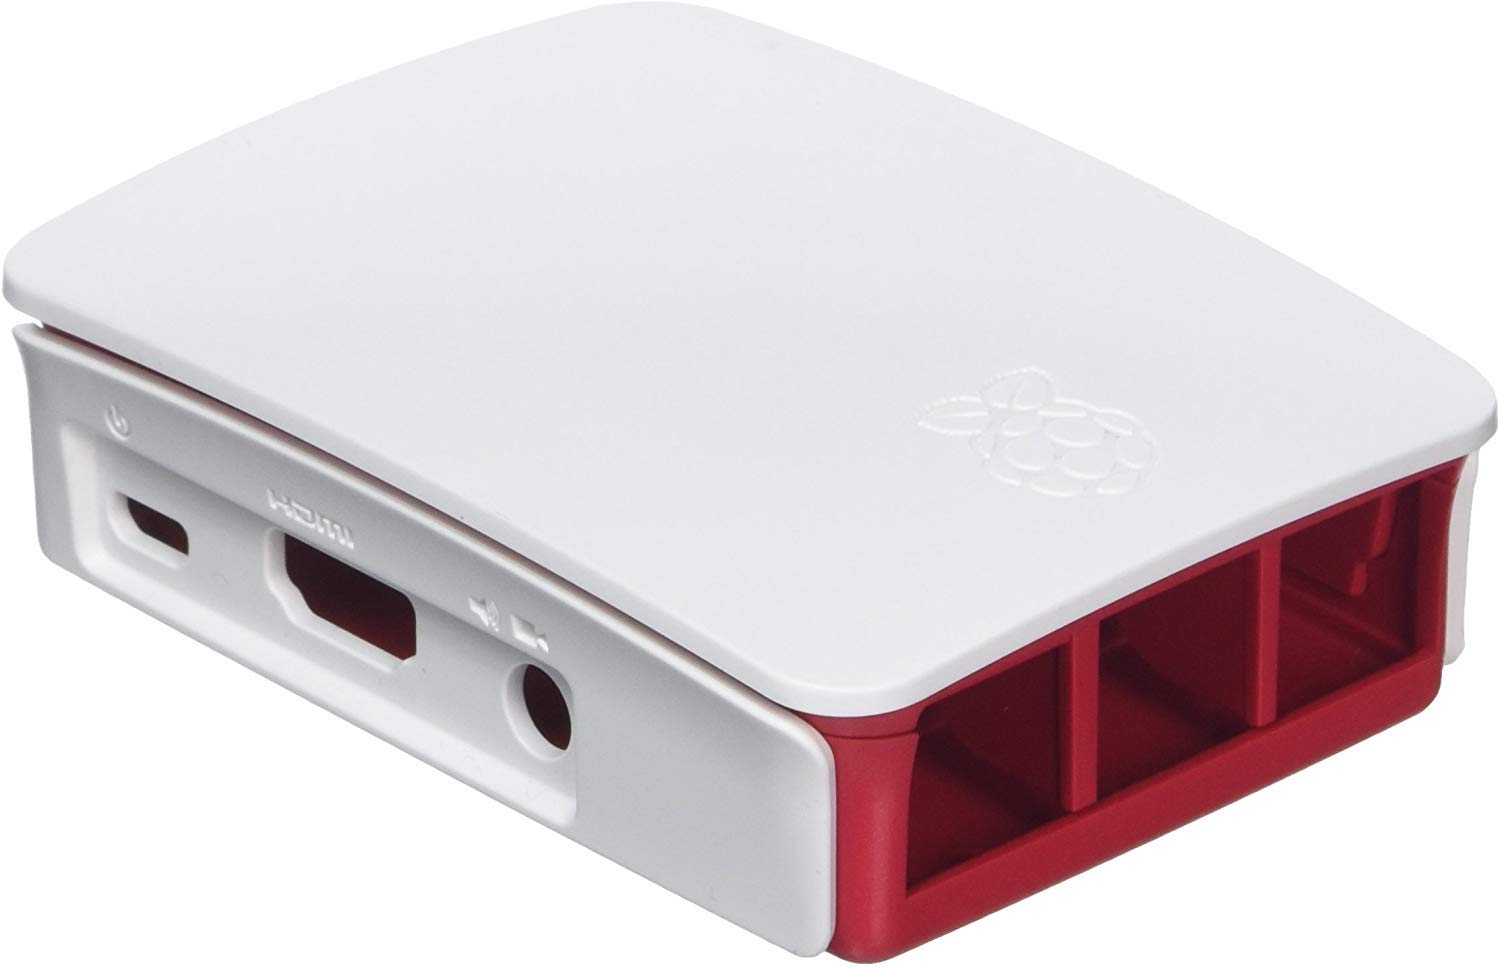 Raspberry Pi 3 Case for Raspberry Pi 3 Model B, B+ only Red/White